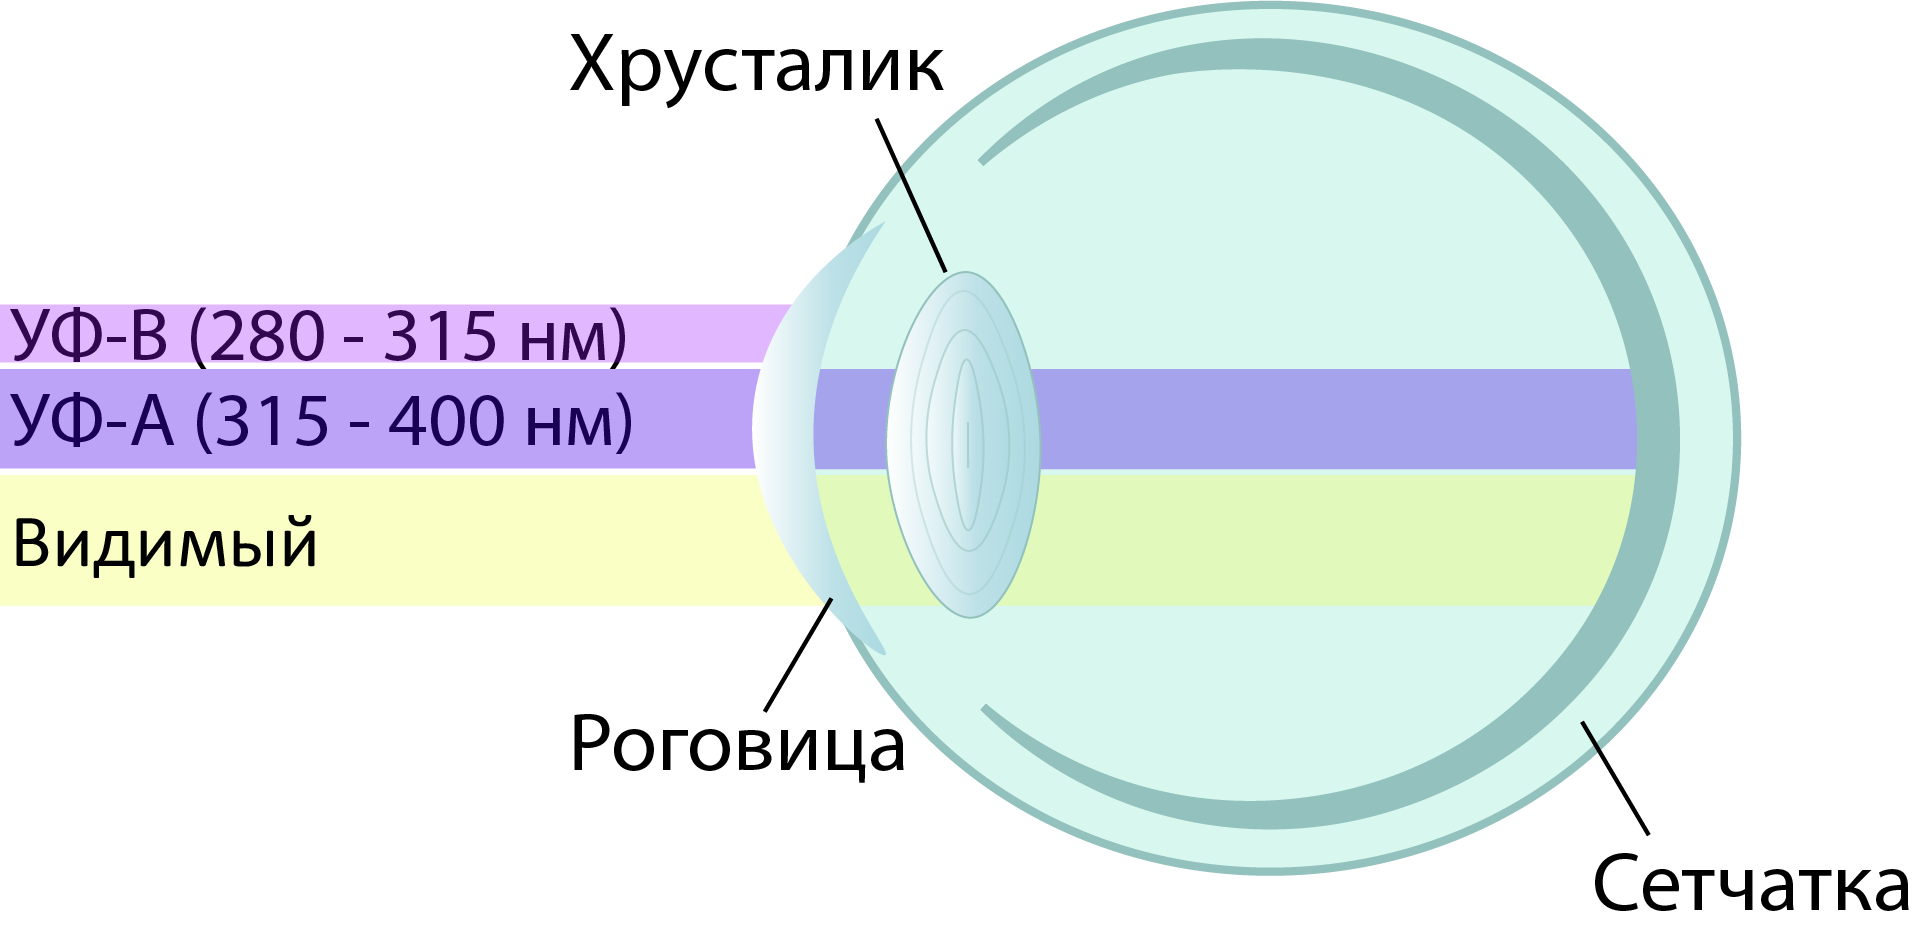 Схема глаза с прозрачными для УФ-А излучения оптическими элементами, характерная для многих видов птиц